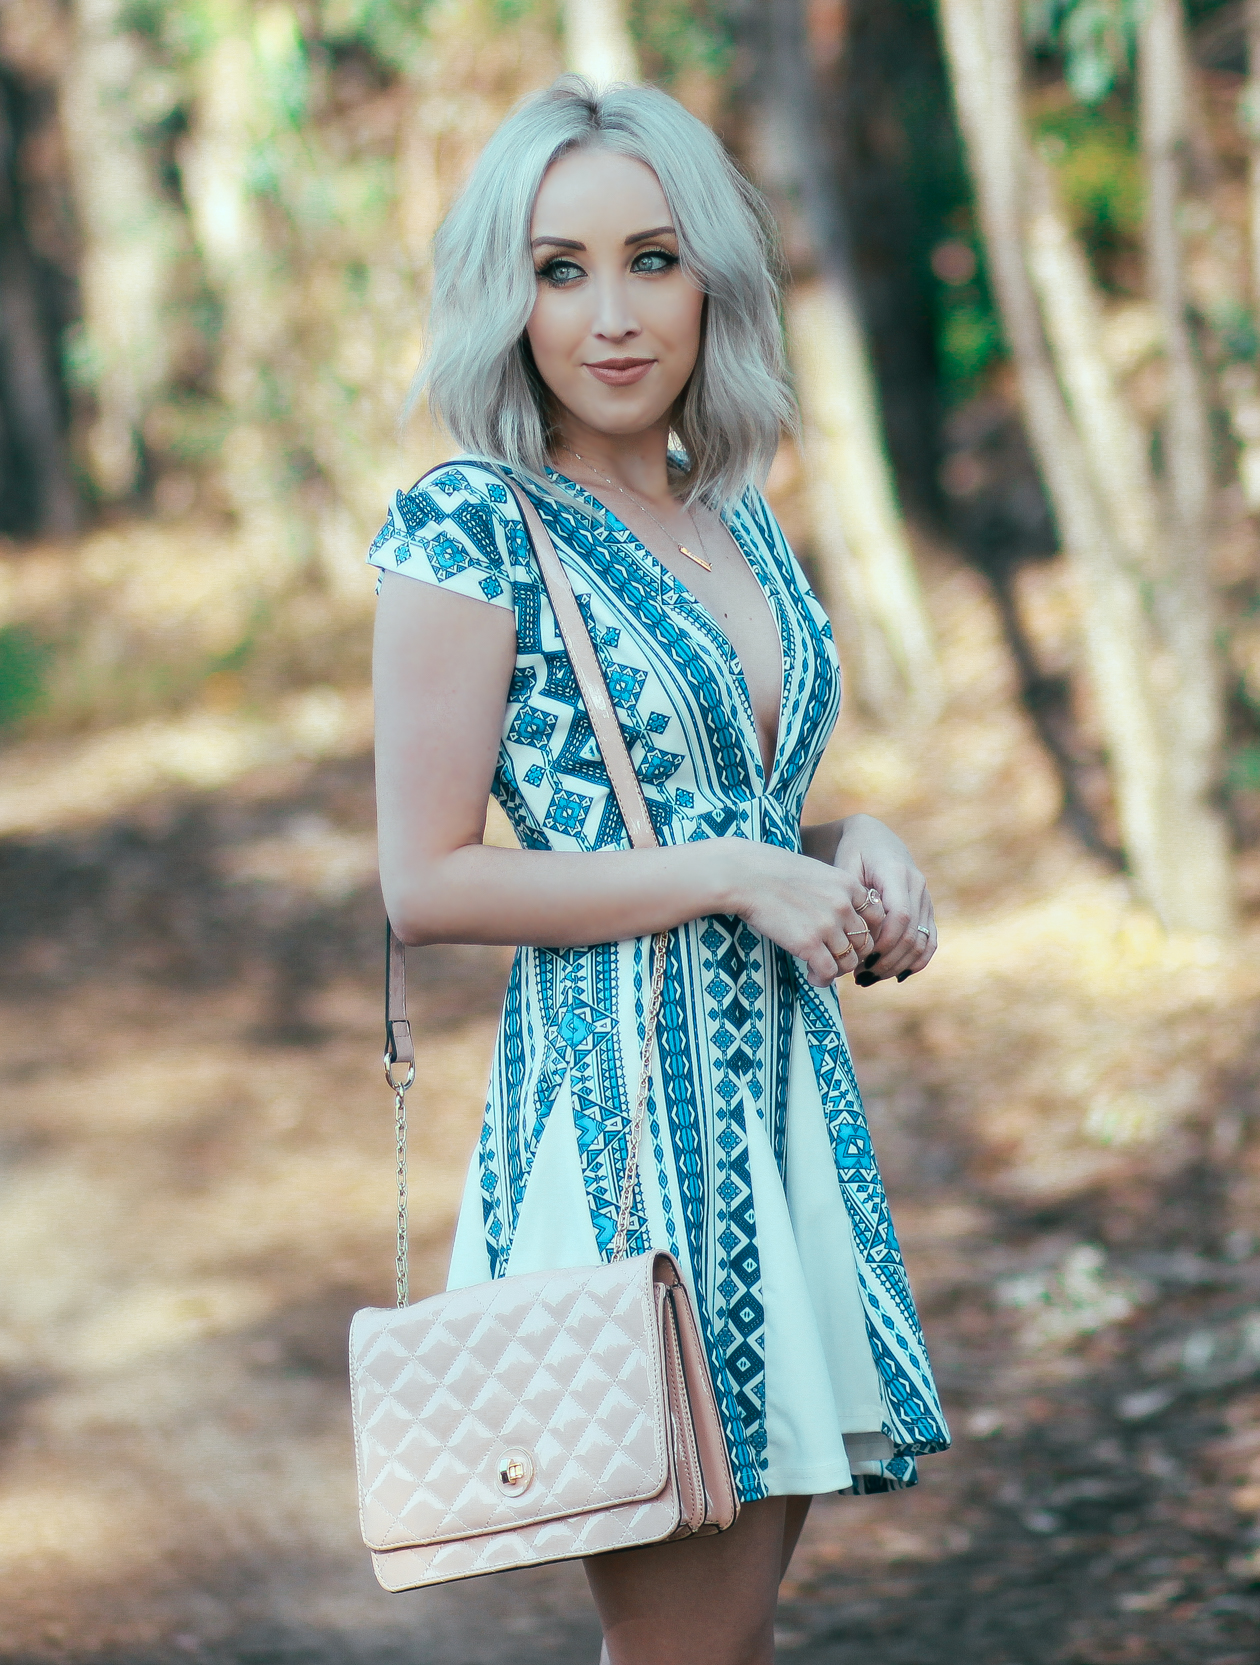 Deep V Neck Blue Dress | BlondieintheCity.com